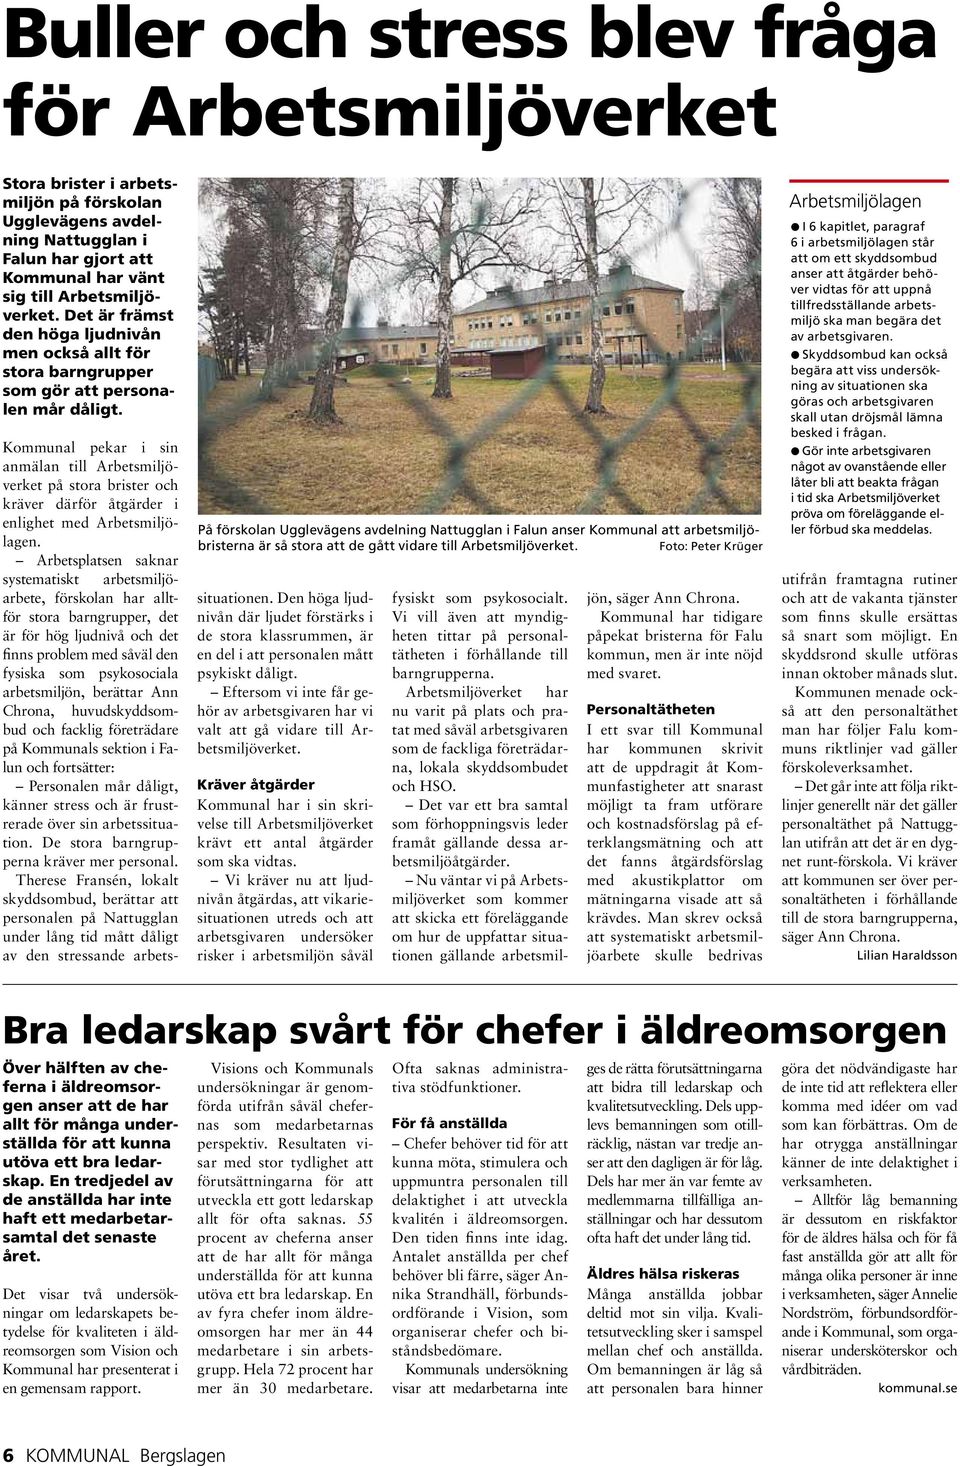 På förskolan Ugglevägens avdelning Nattugglan i Falun anser Kommunal att arbetsmiljöbristerna är så stora att de gått vidare till Arbetsmiljöverket.